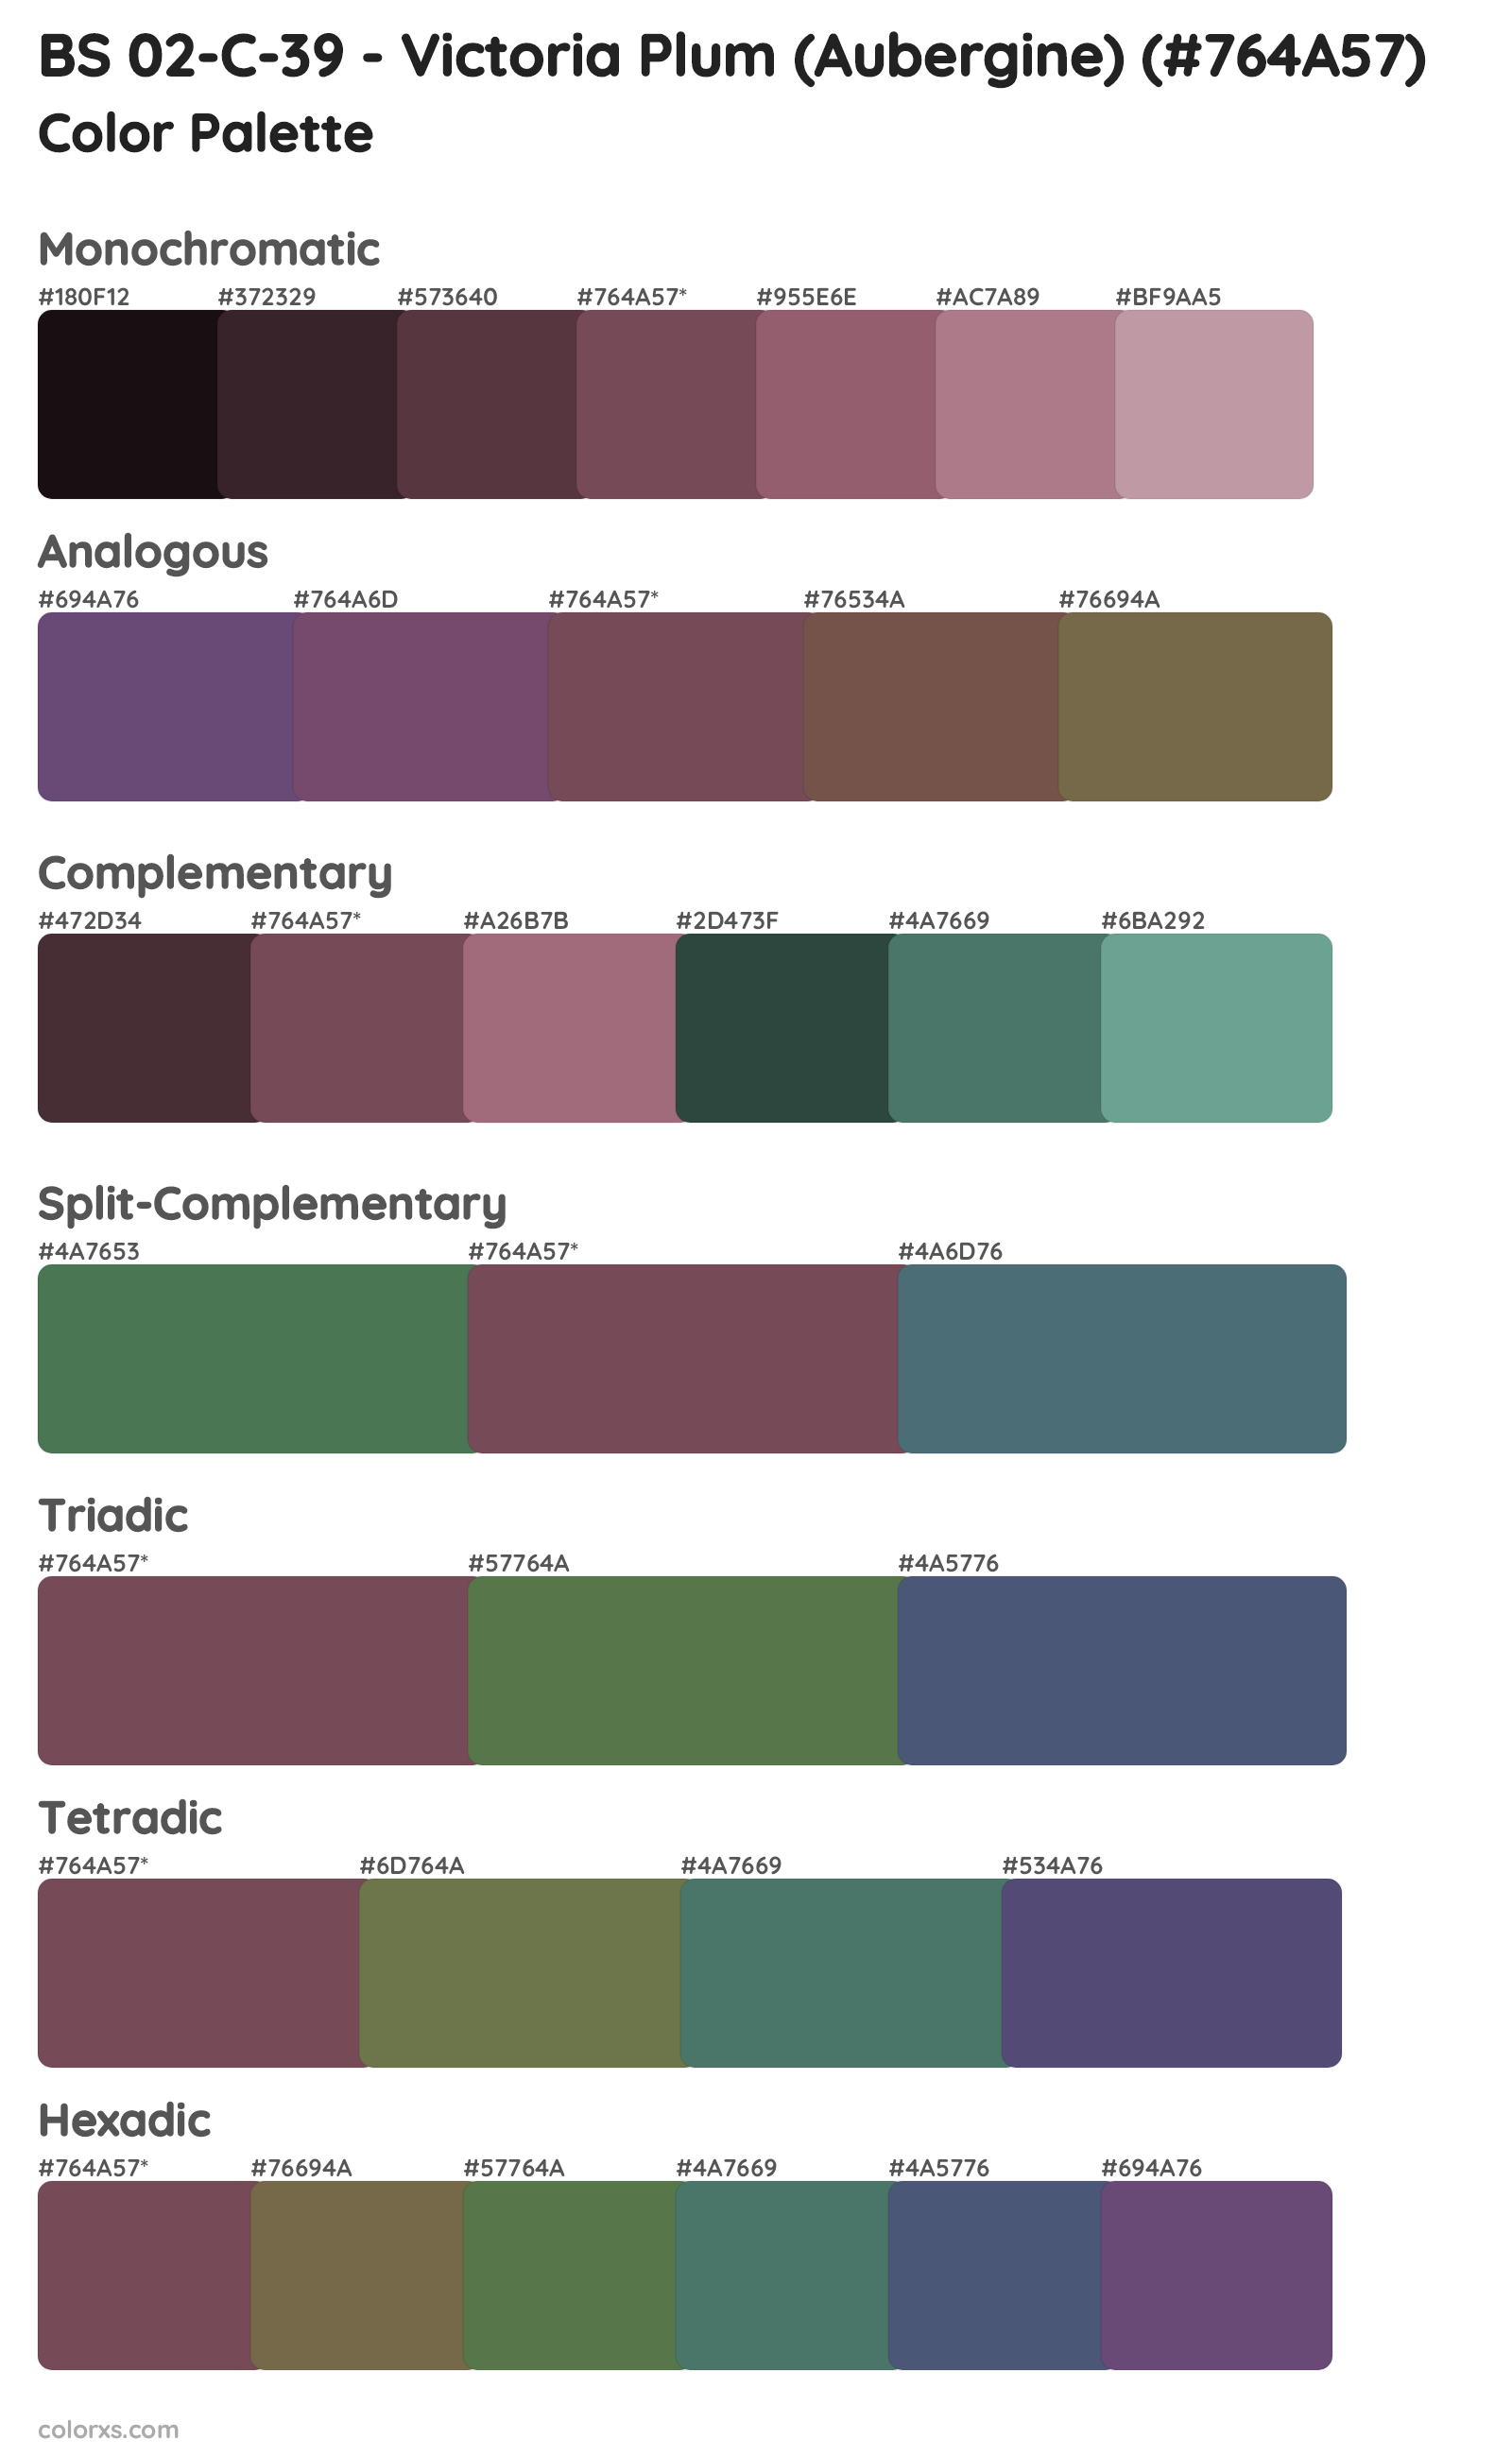 BS 02-C-39 - Victoria Plum (Aubergine) Color Scheme Palettes